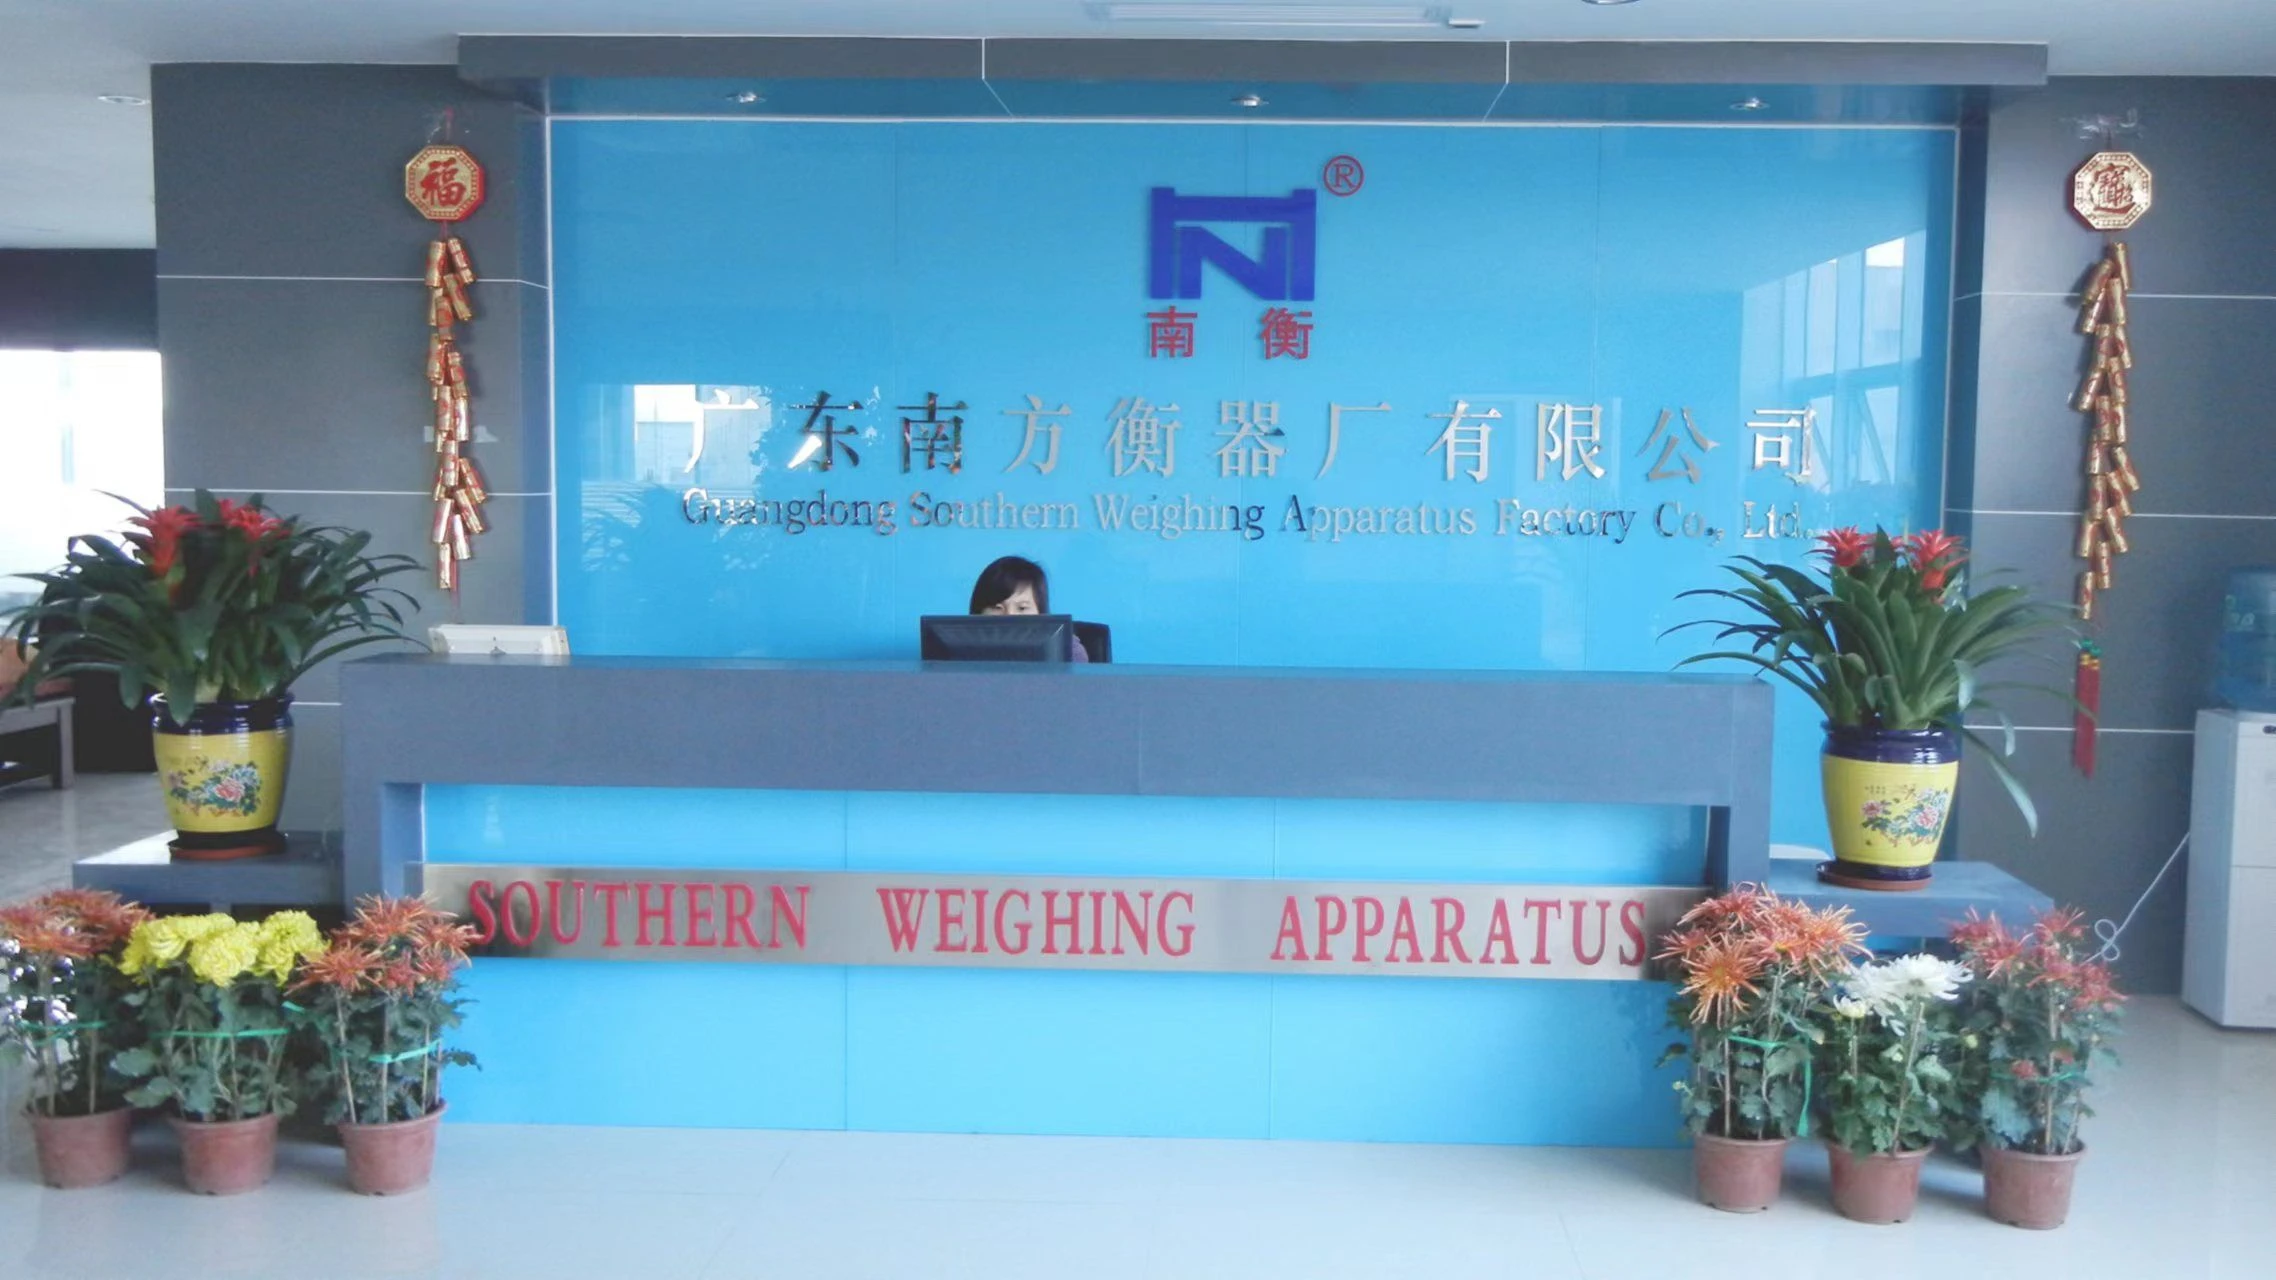 Guangdong nanfang weighing apparatus factory co.,ltd